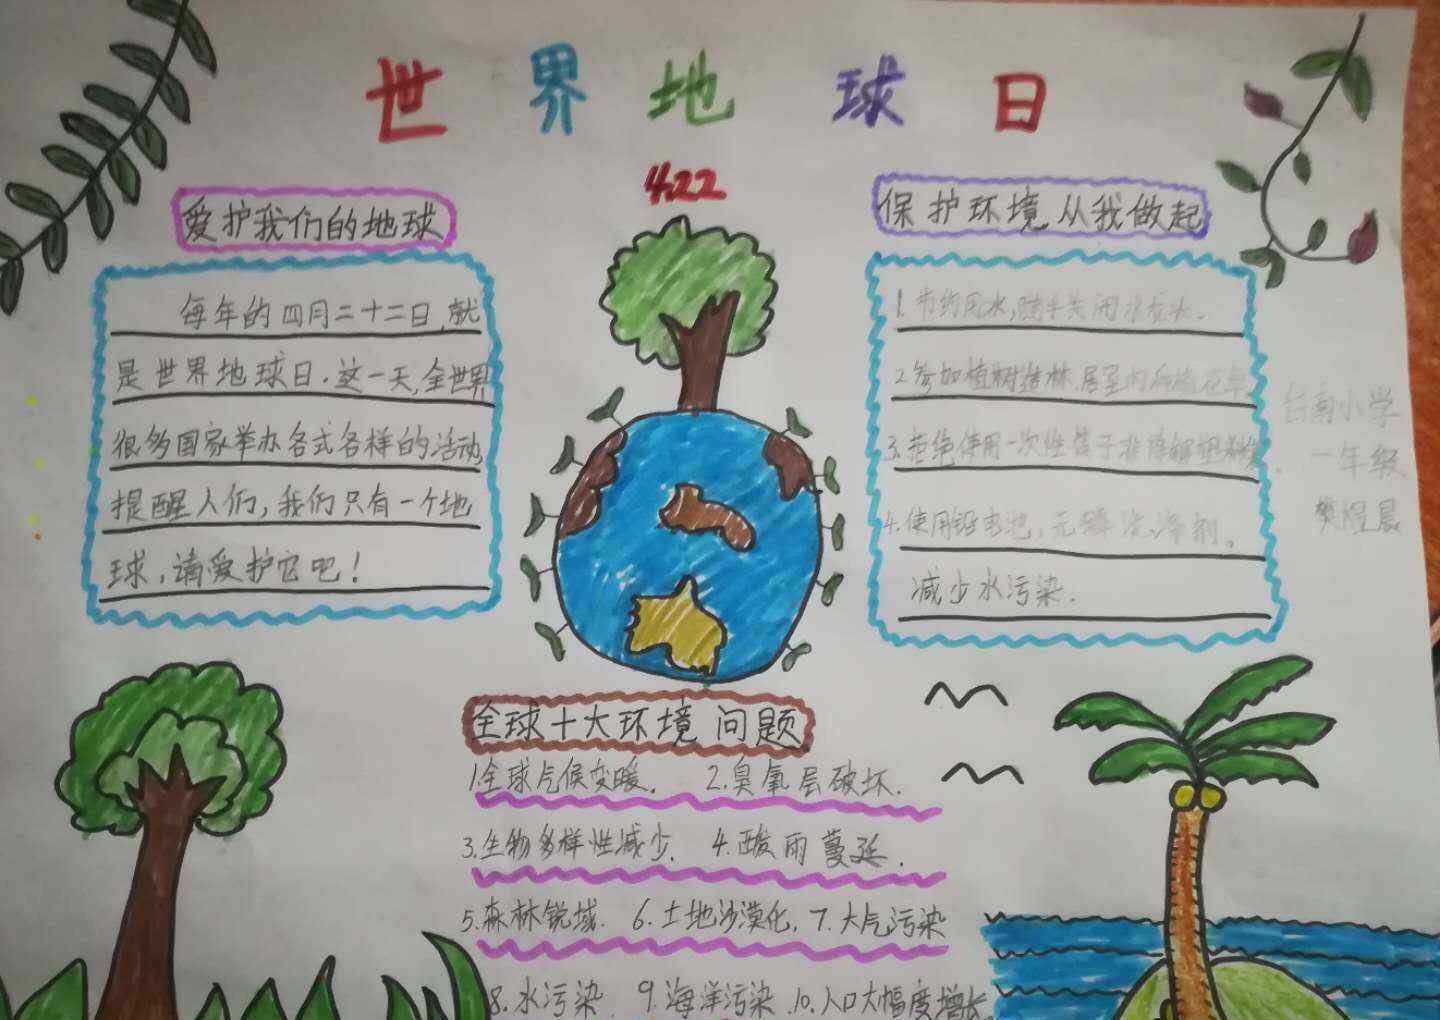 台南小学 珍爱地球，人与自然和谐共生   ——台南小学